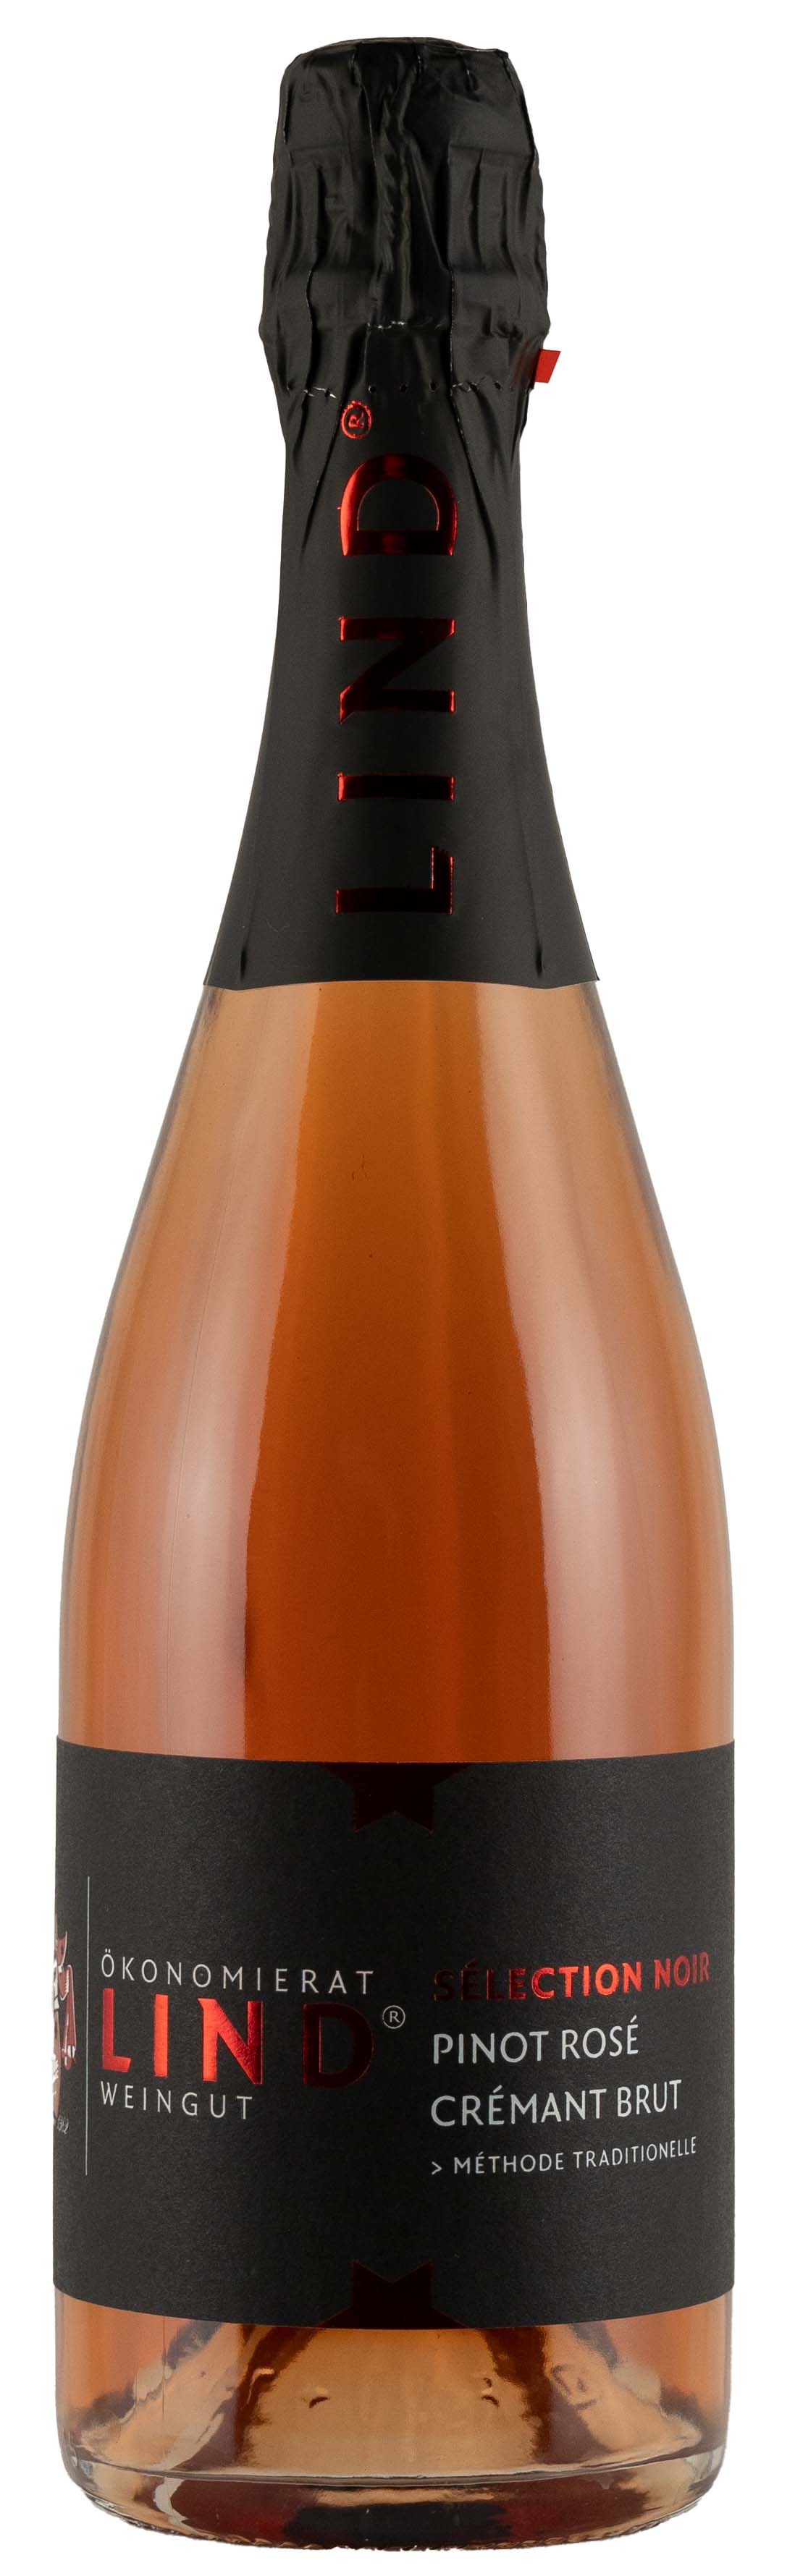 2021 Pinot Rosé Crémant Brut 0,75 L - Weingut Ökonomierat Lind